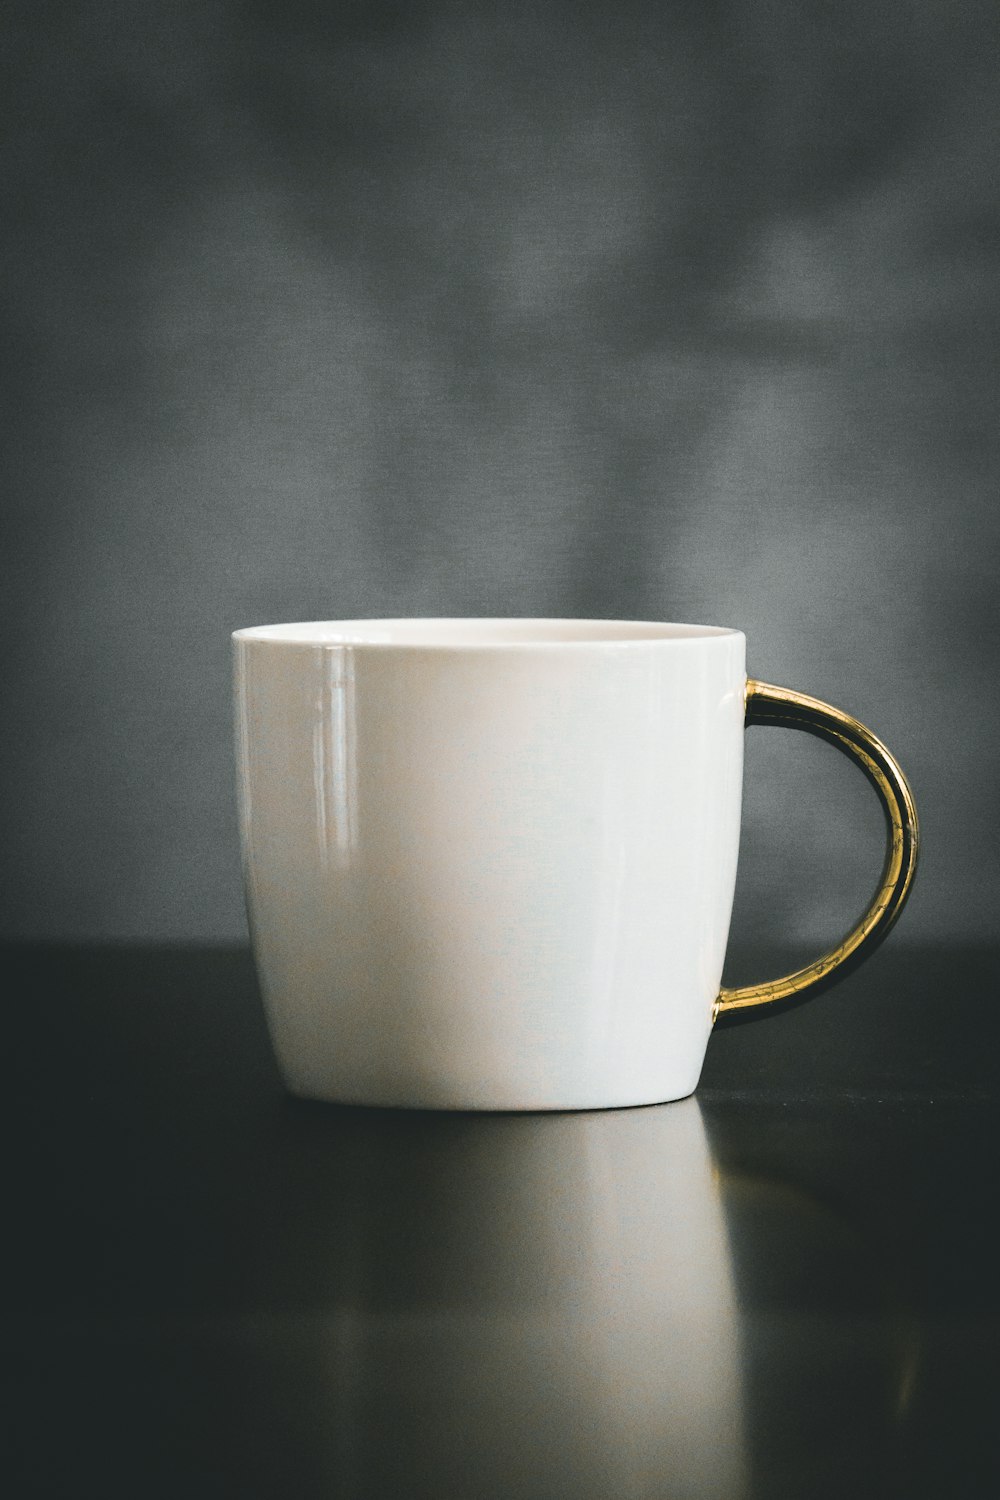 Mug en céramique blanc et beige sur surface noire